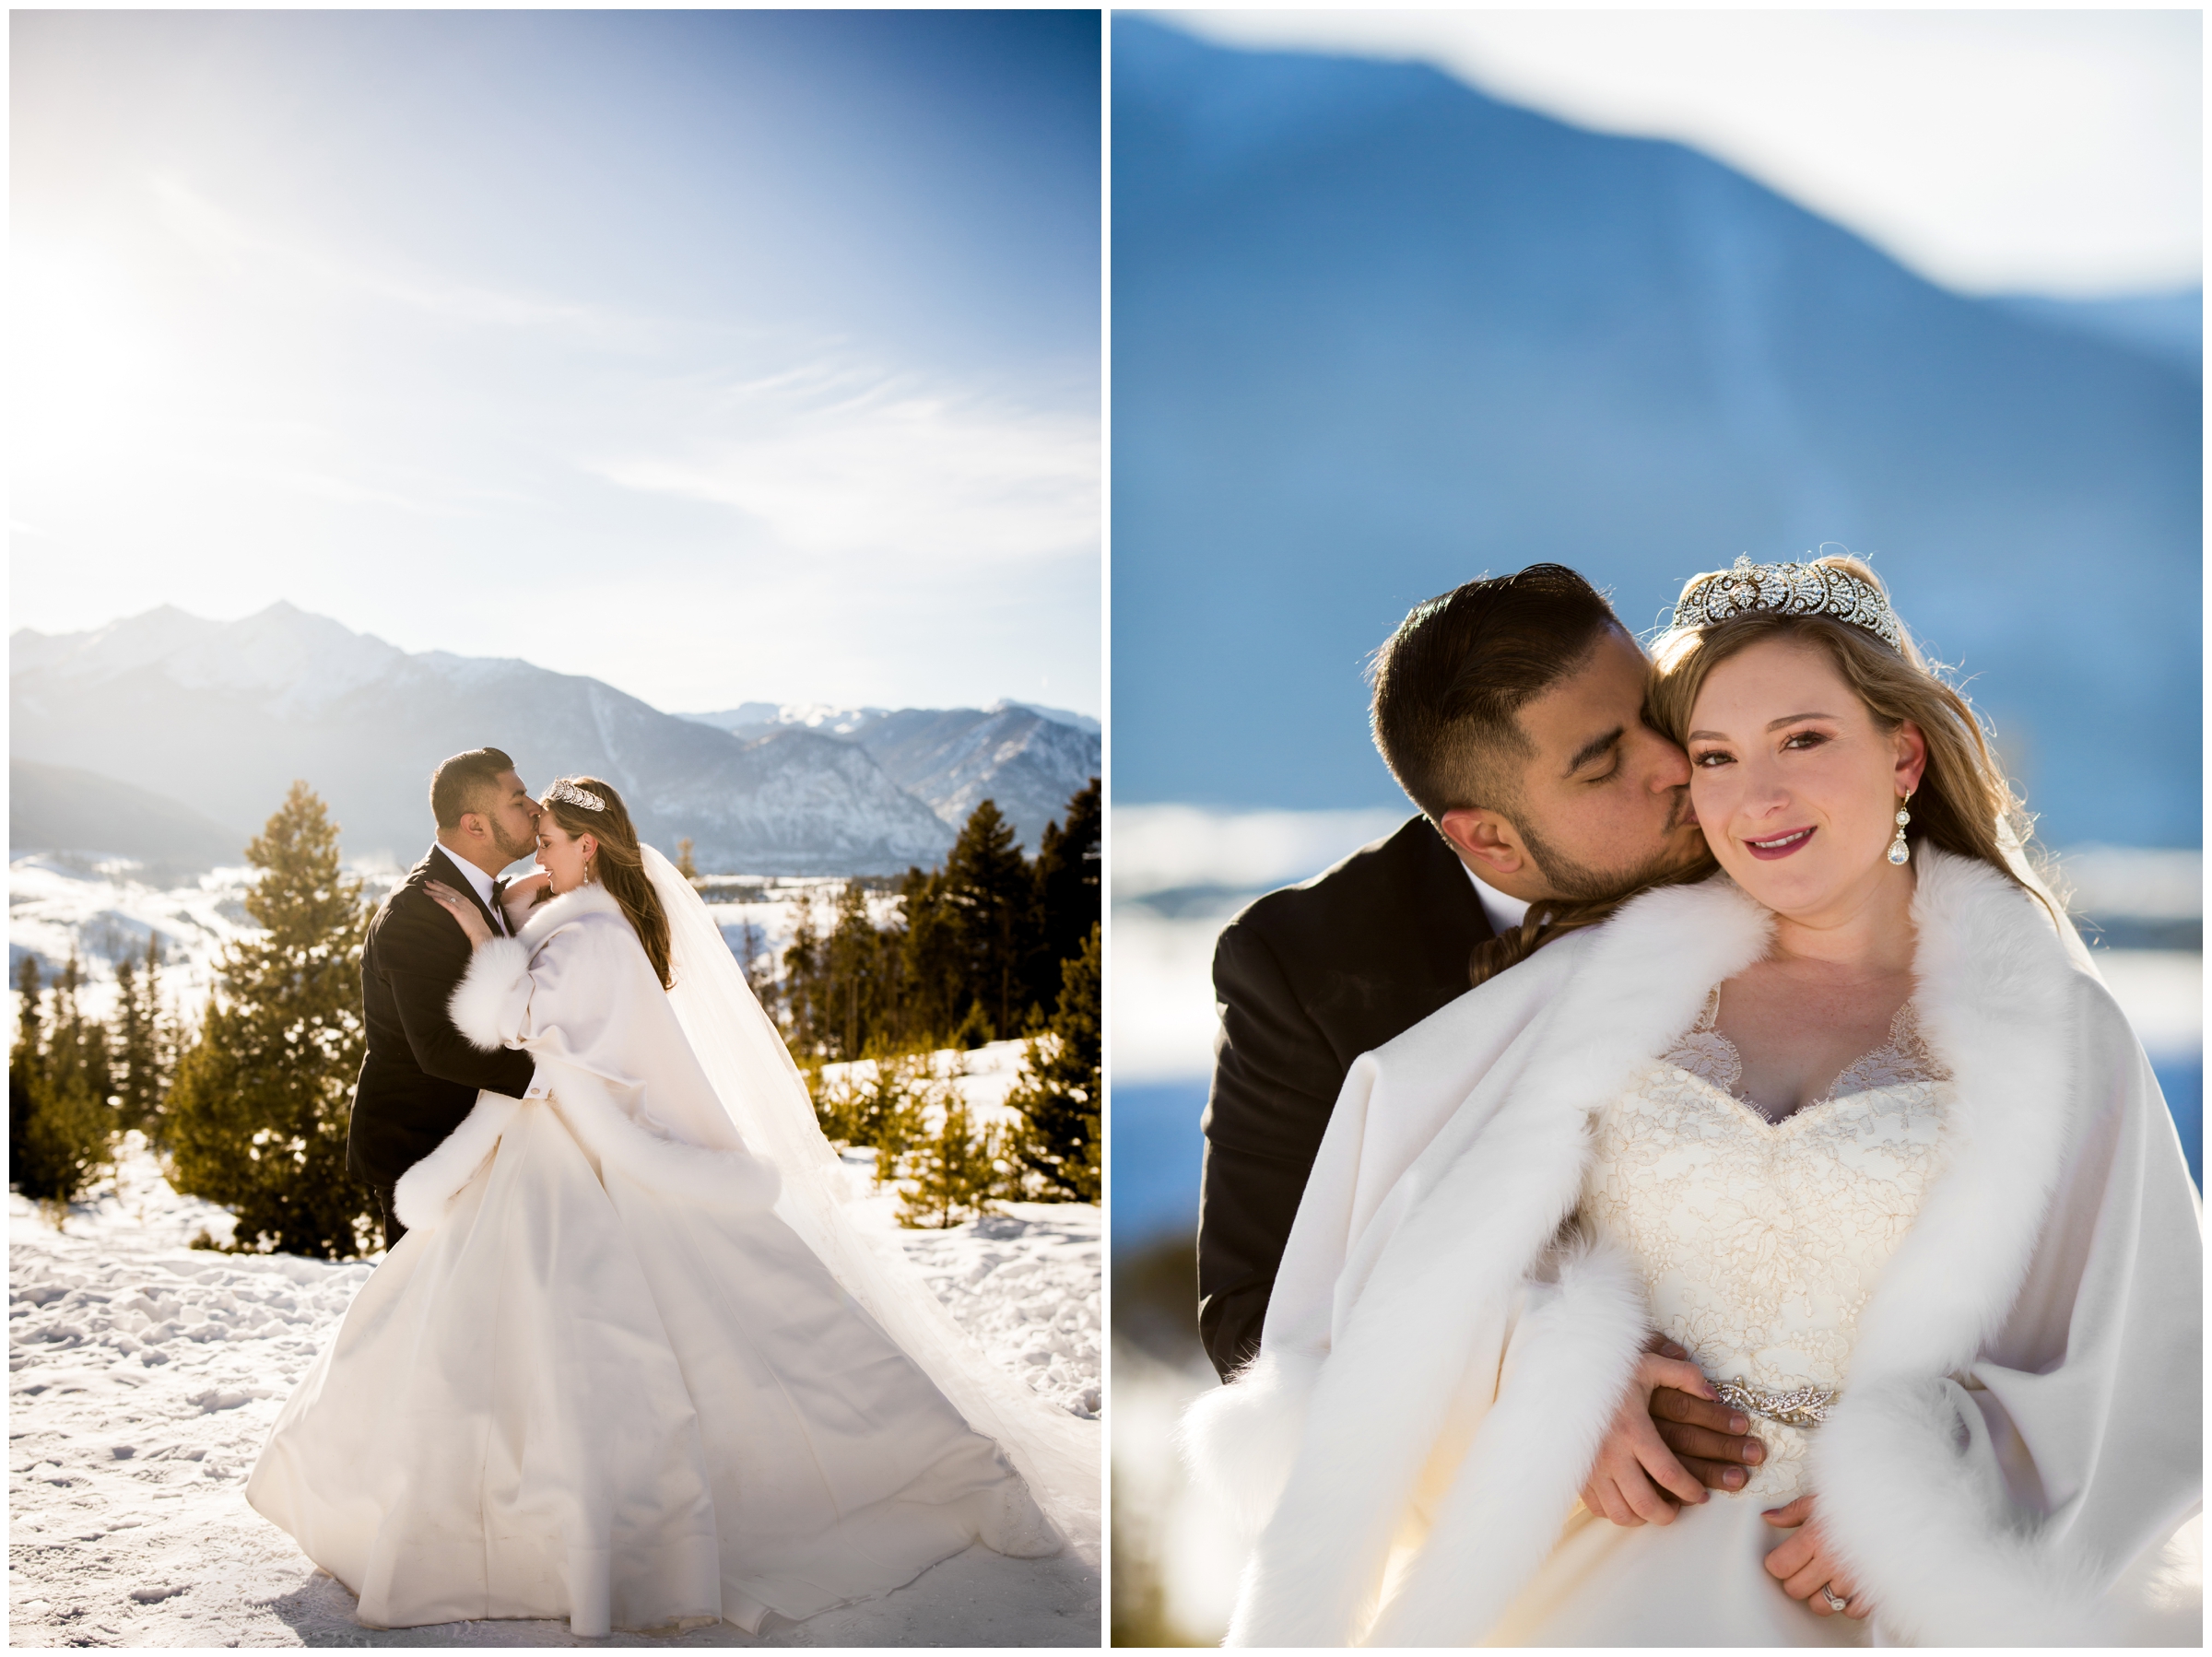 snowy Breckenridge Colorado winter wedding photography 